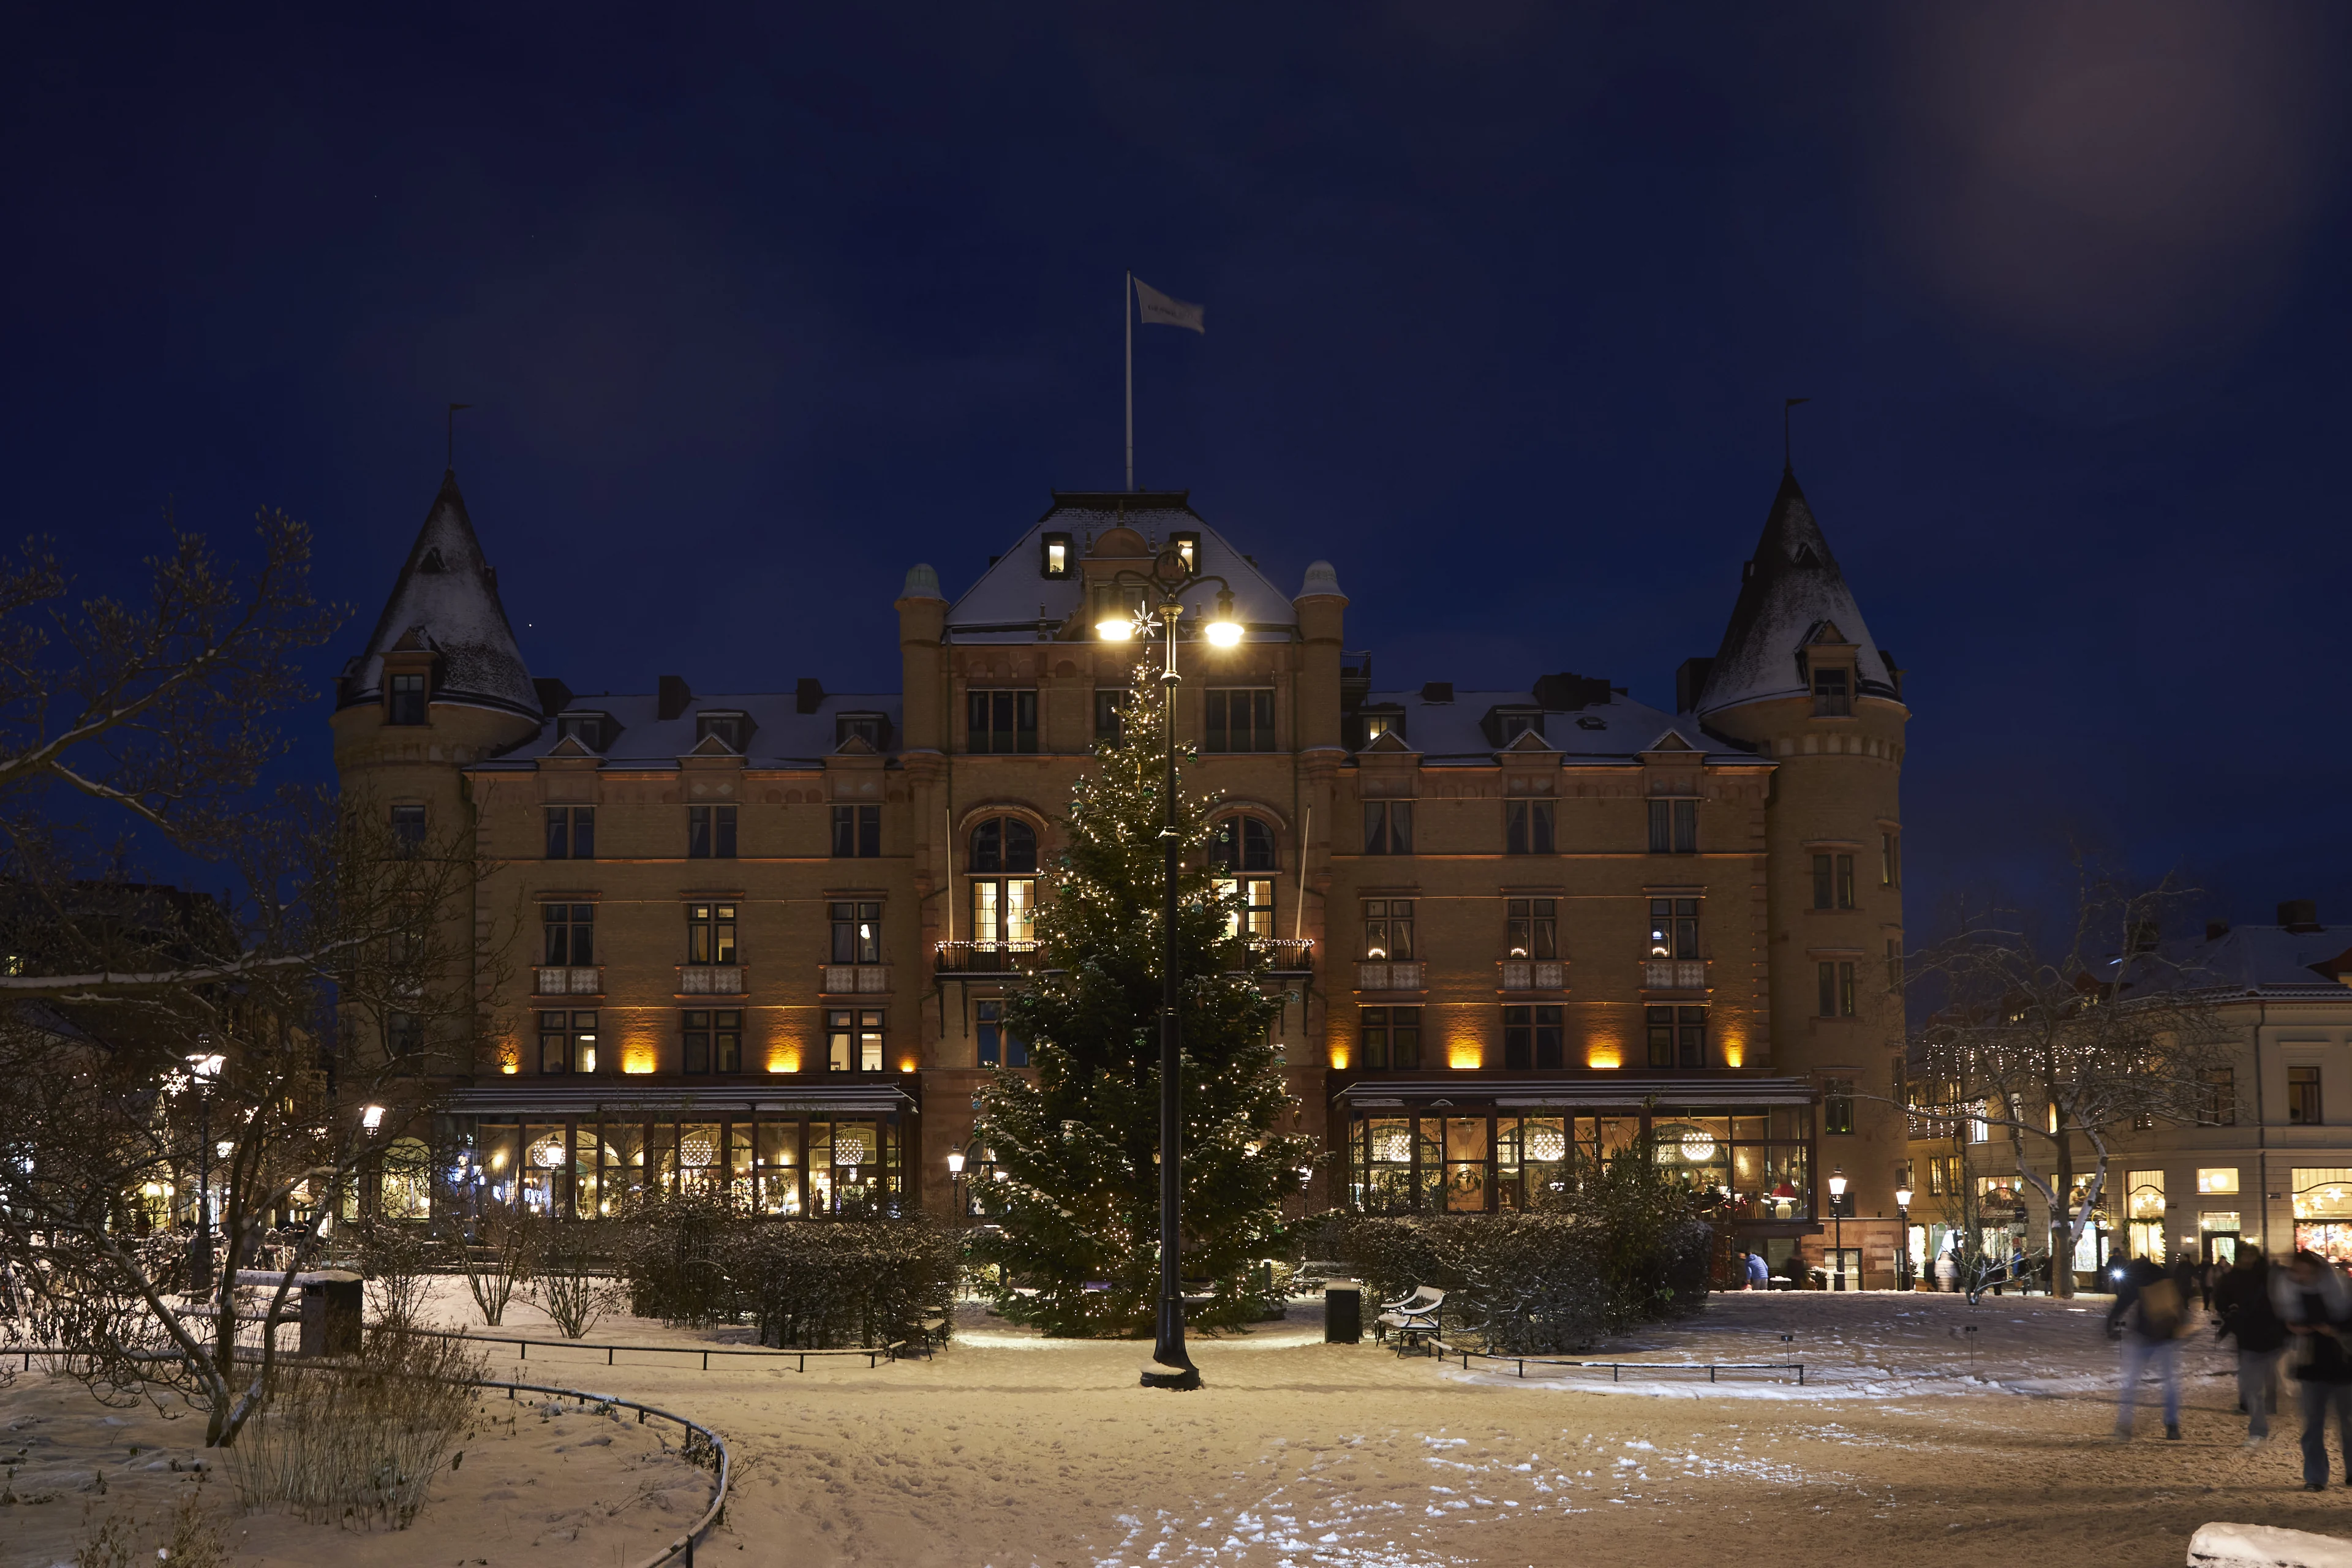 Det smukke Grand Hotel i Lund klædt i sne.